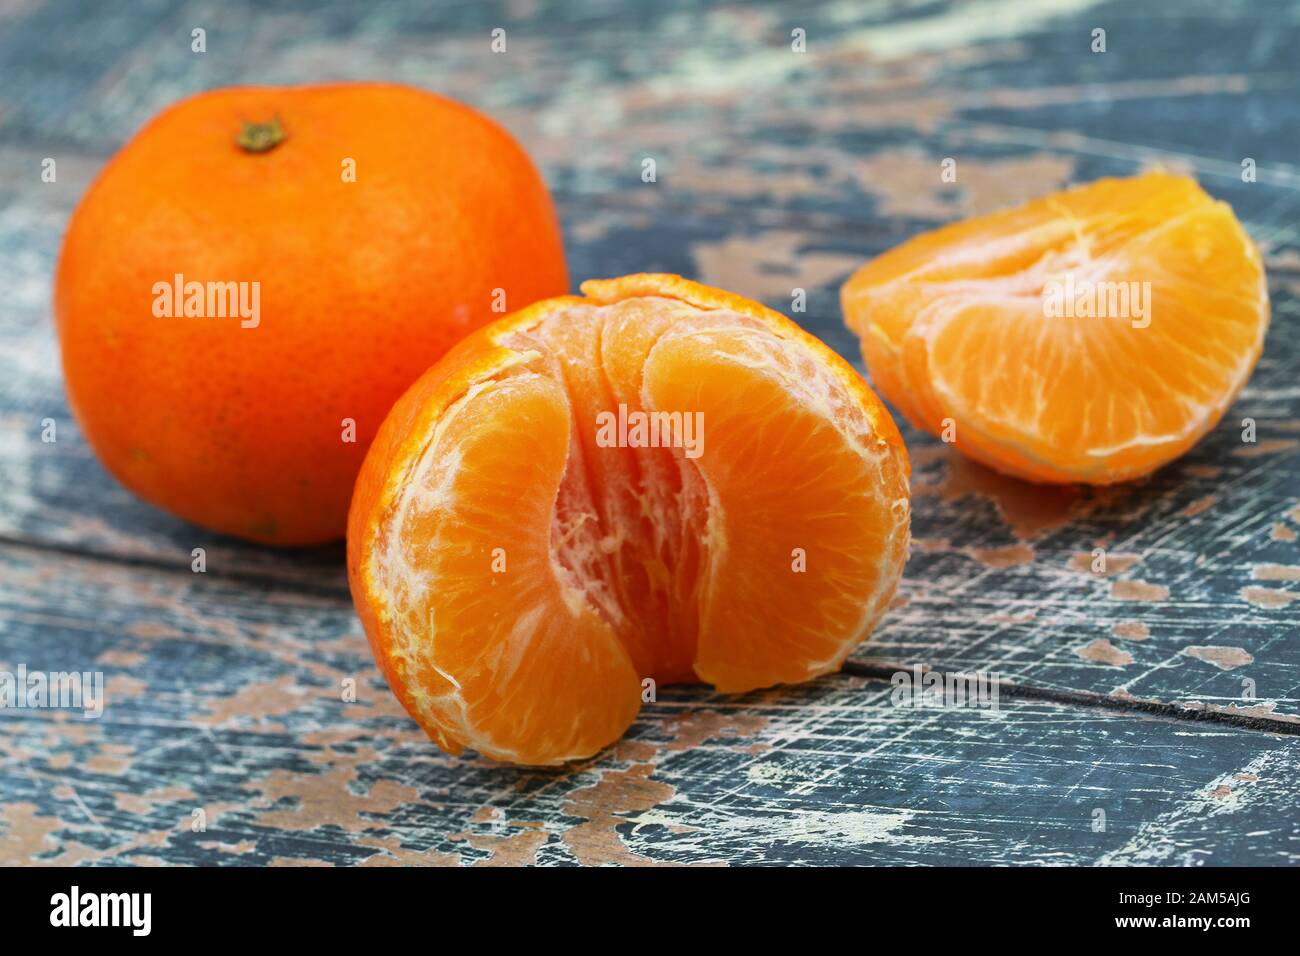 Meilleure source de vitamine C : mandarine pelée Banque D'Images